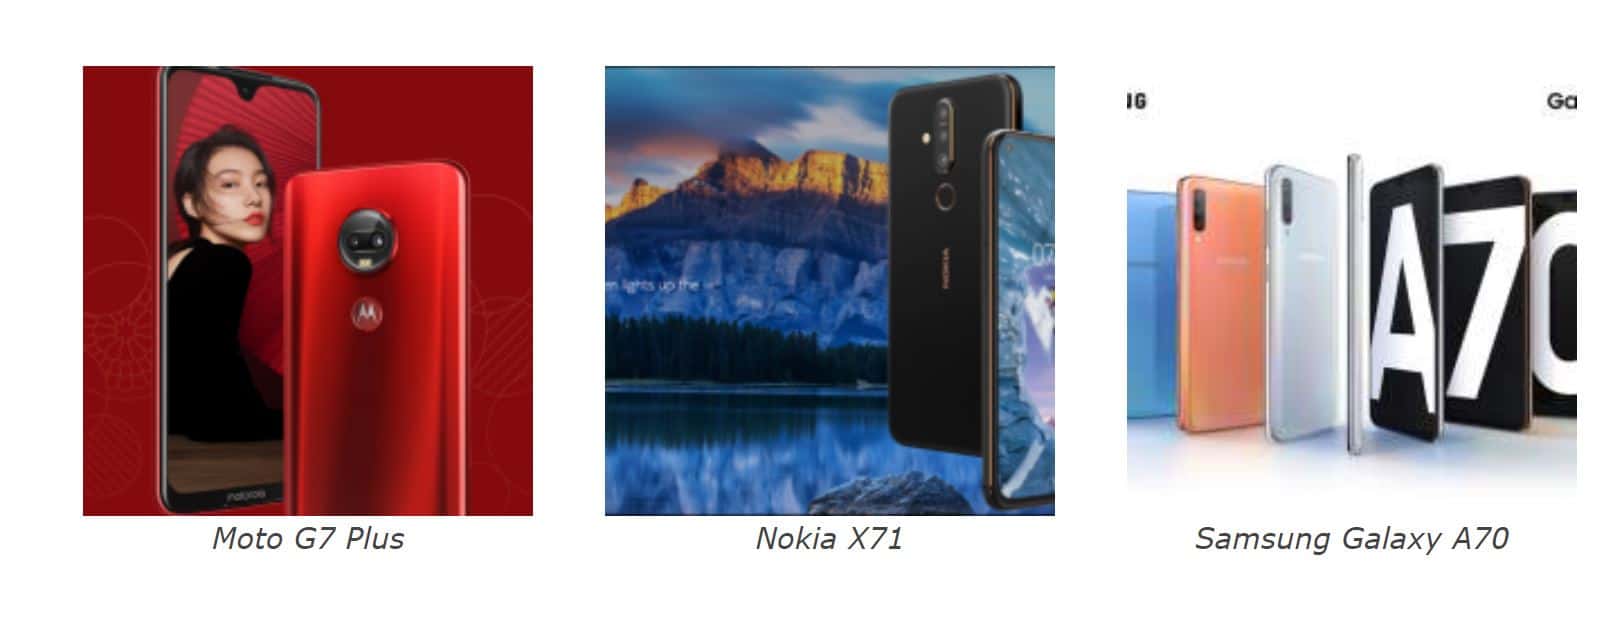 Nokia X71 VS Samsung Galaxy A70 VS Moto G7 Plus Specs Comparison